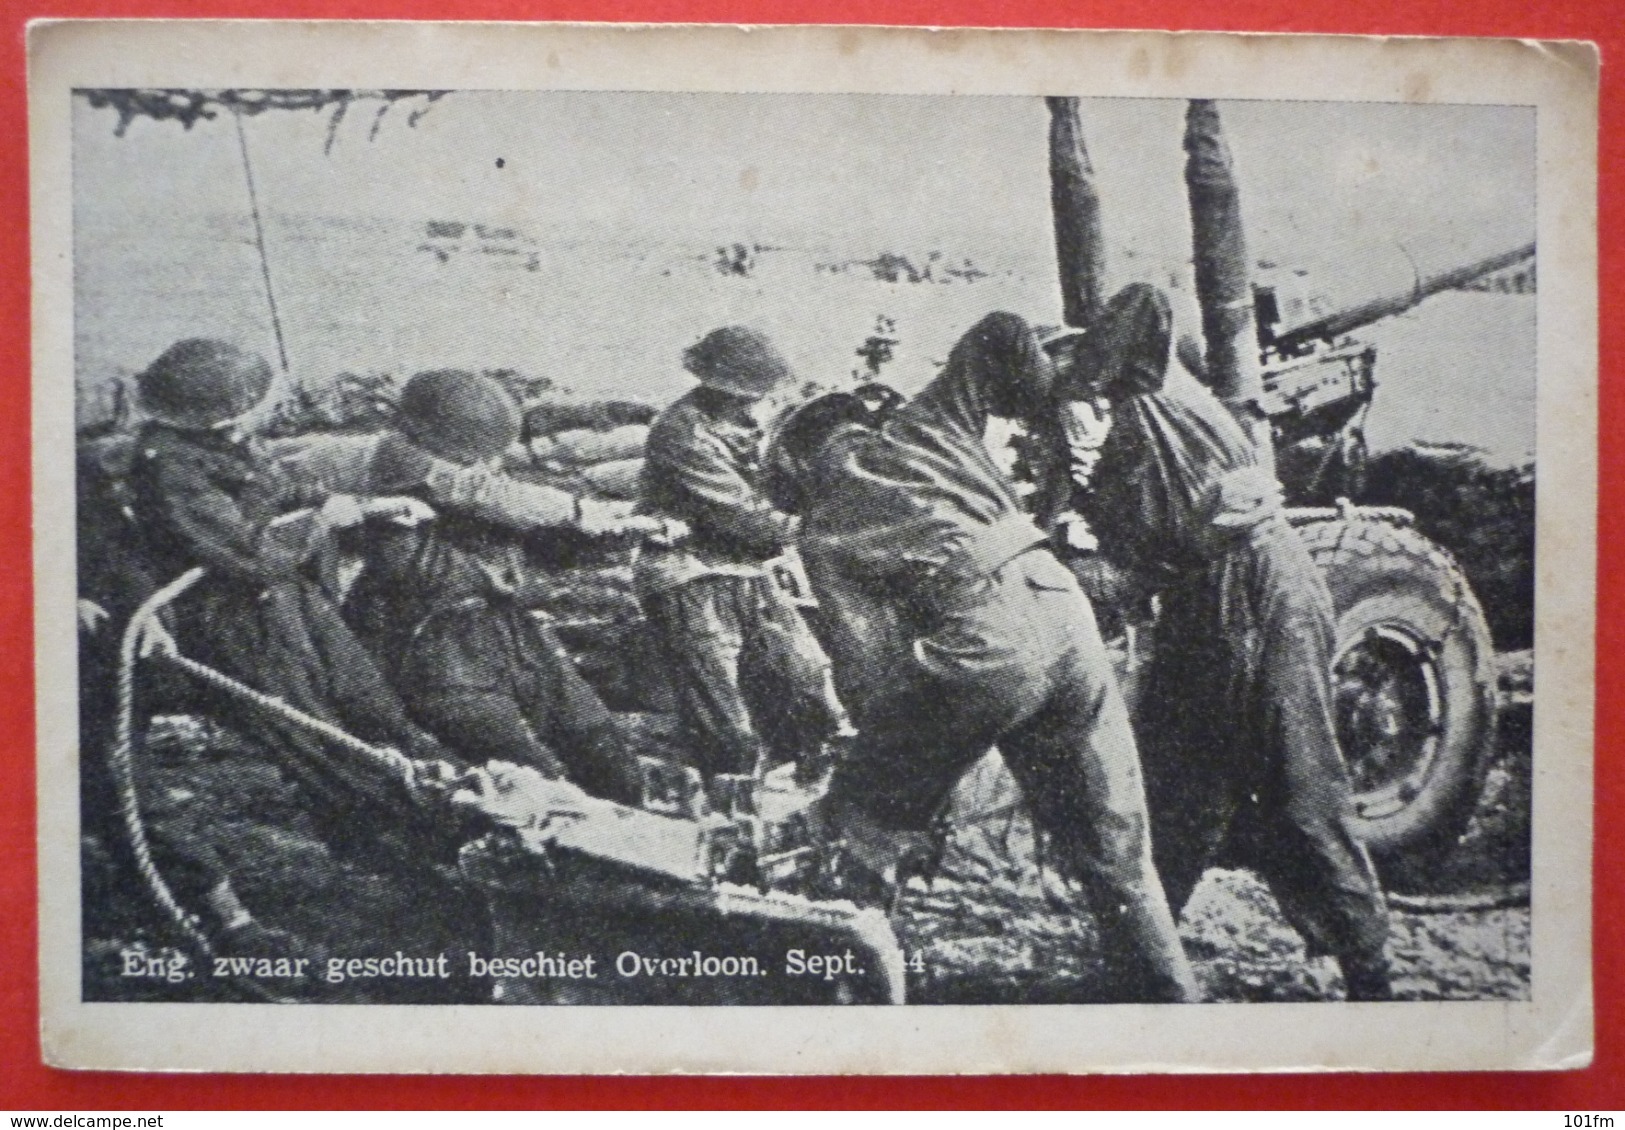 ENG.ZWAAR GESCHUT BESCHIET OVERLOON - SEPT. 1944 U.S. ARMY - Weltkrieg 1939-45